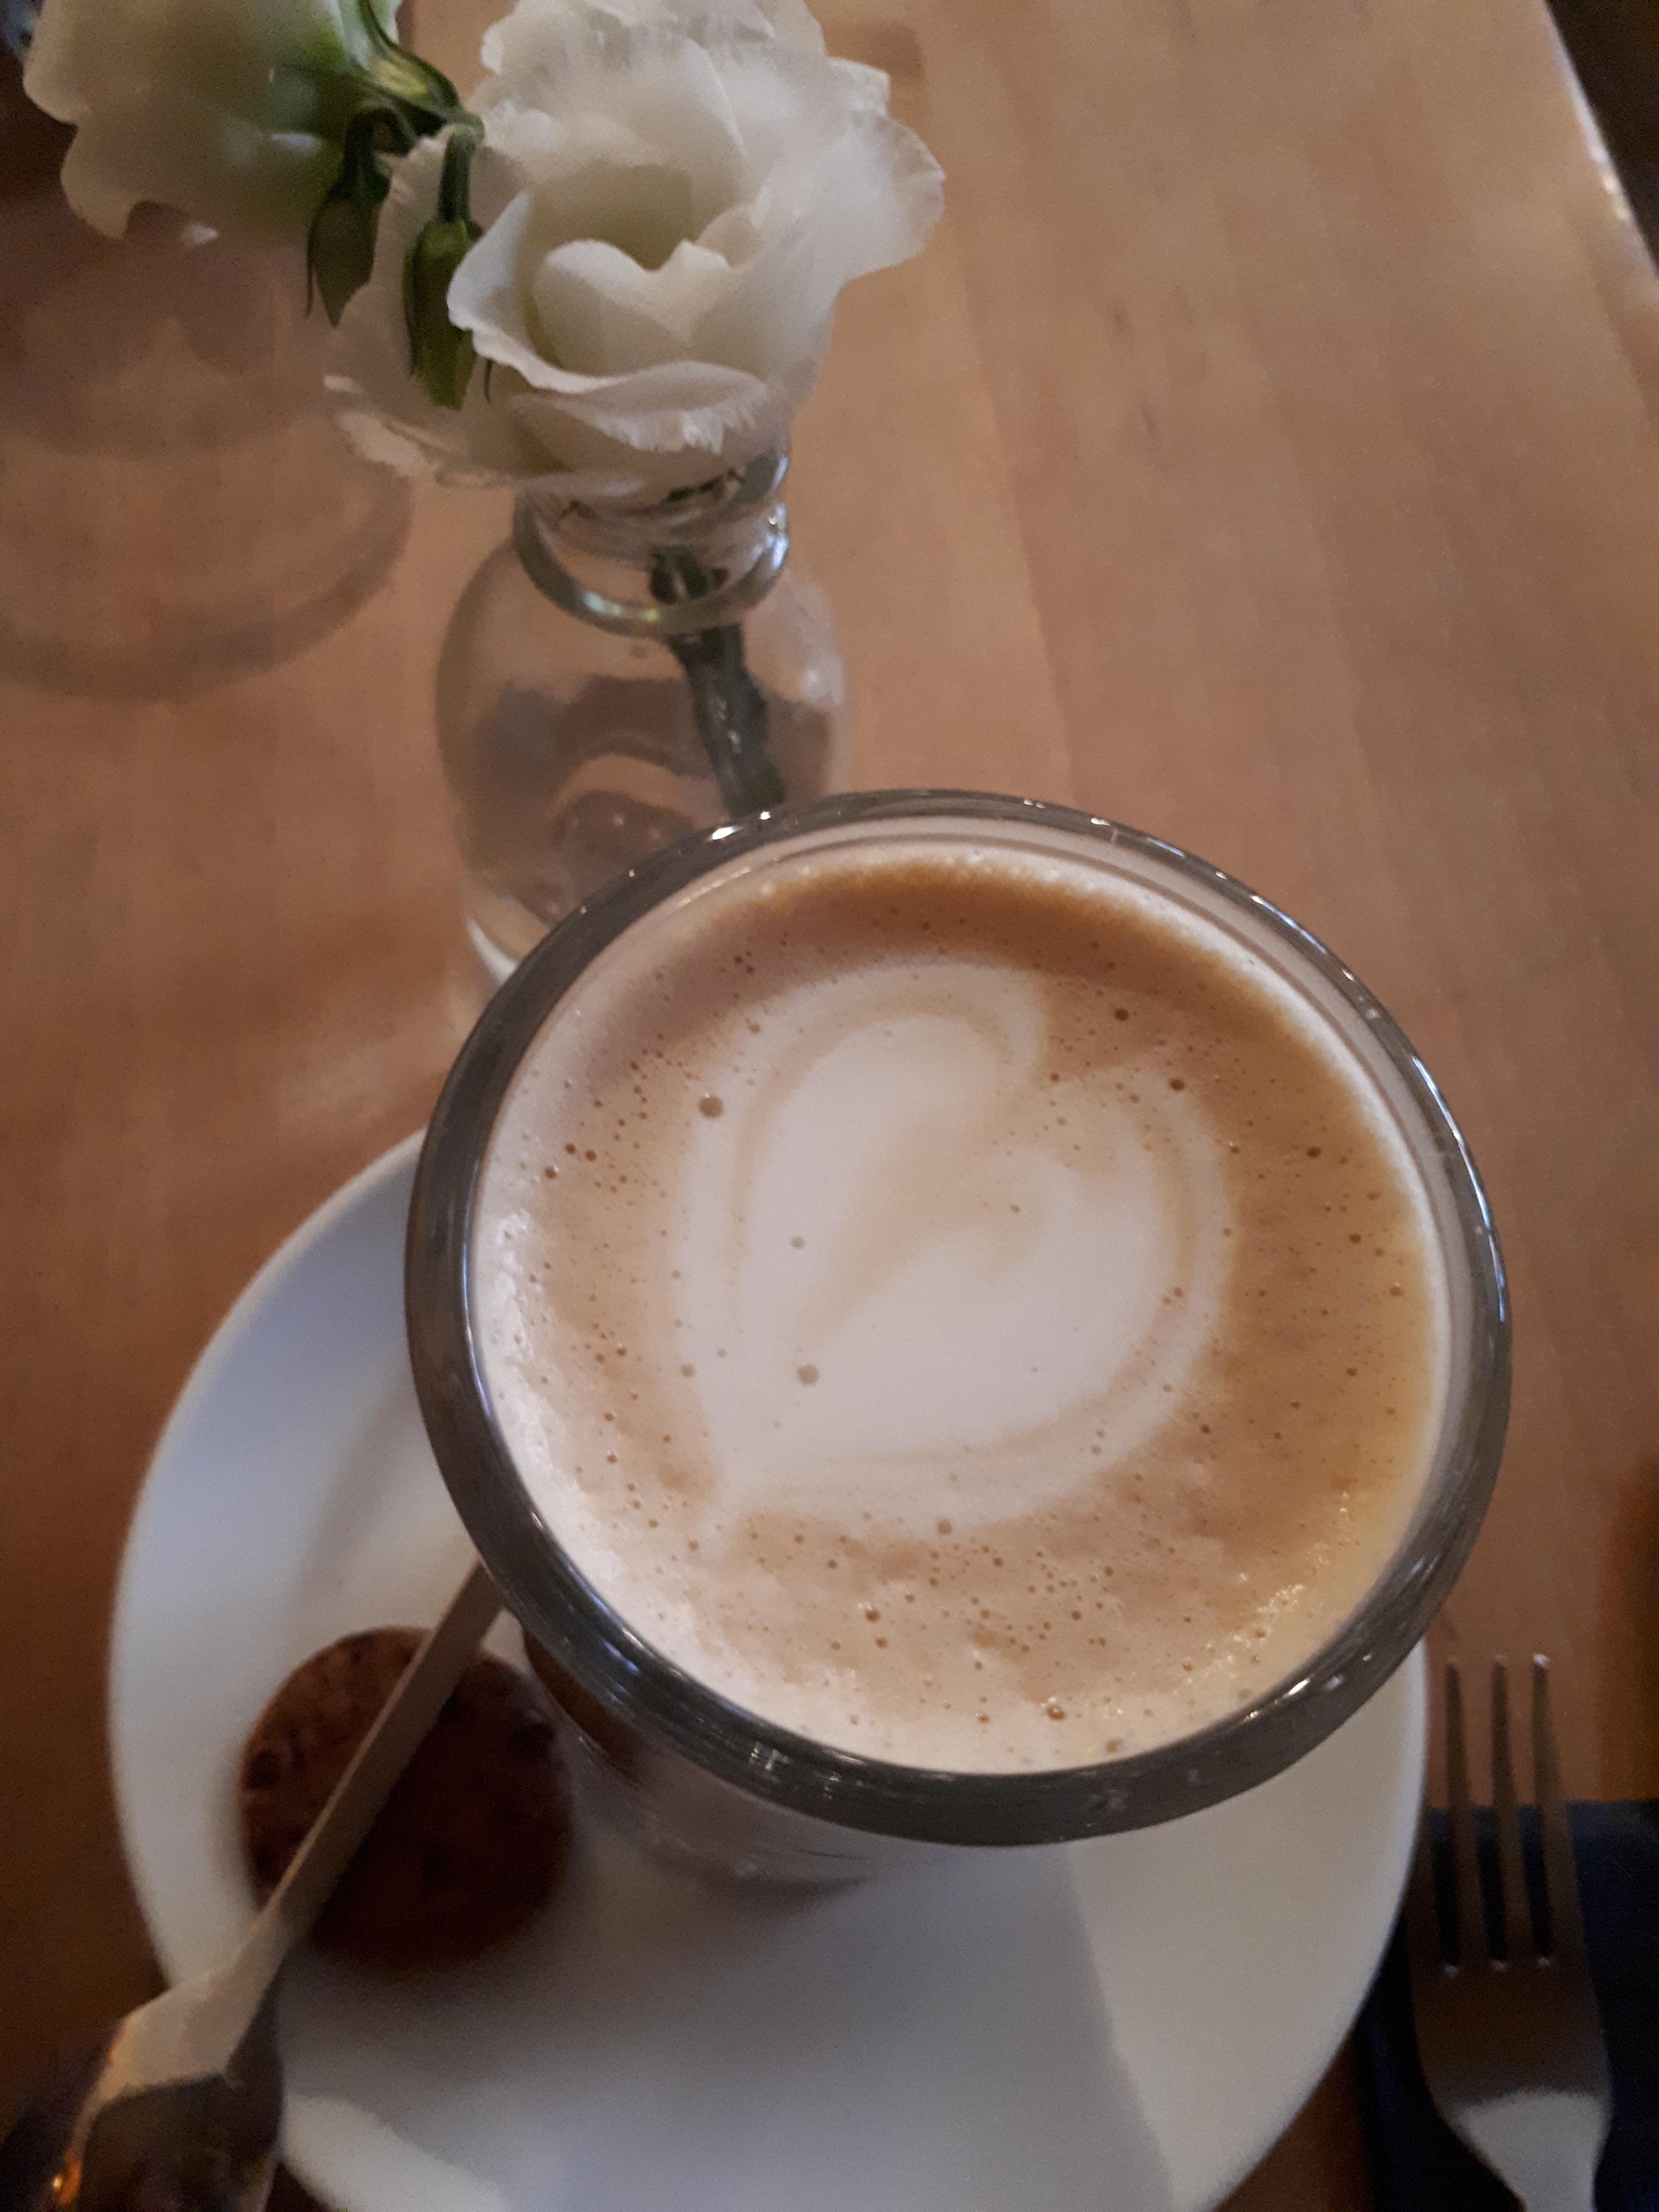 Schöner Start in den Tag. Mit Liebe gemacht in tollem Ambiente.
#neuerösterei #lübeck #kaffee #liebe #blumen